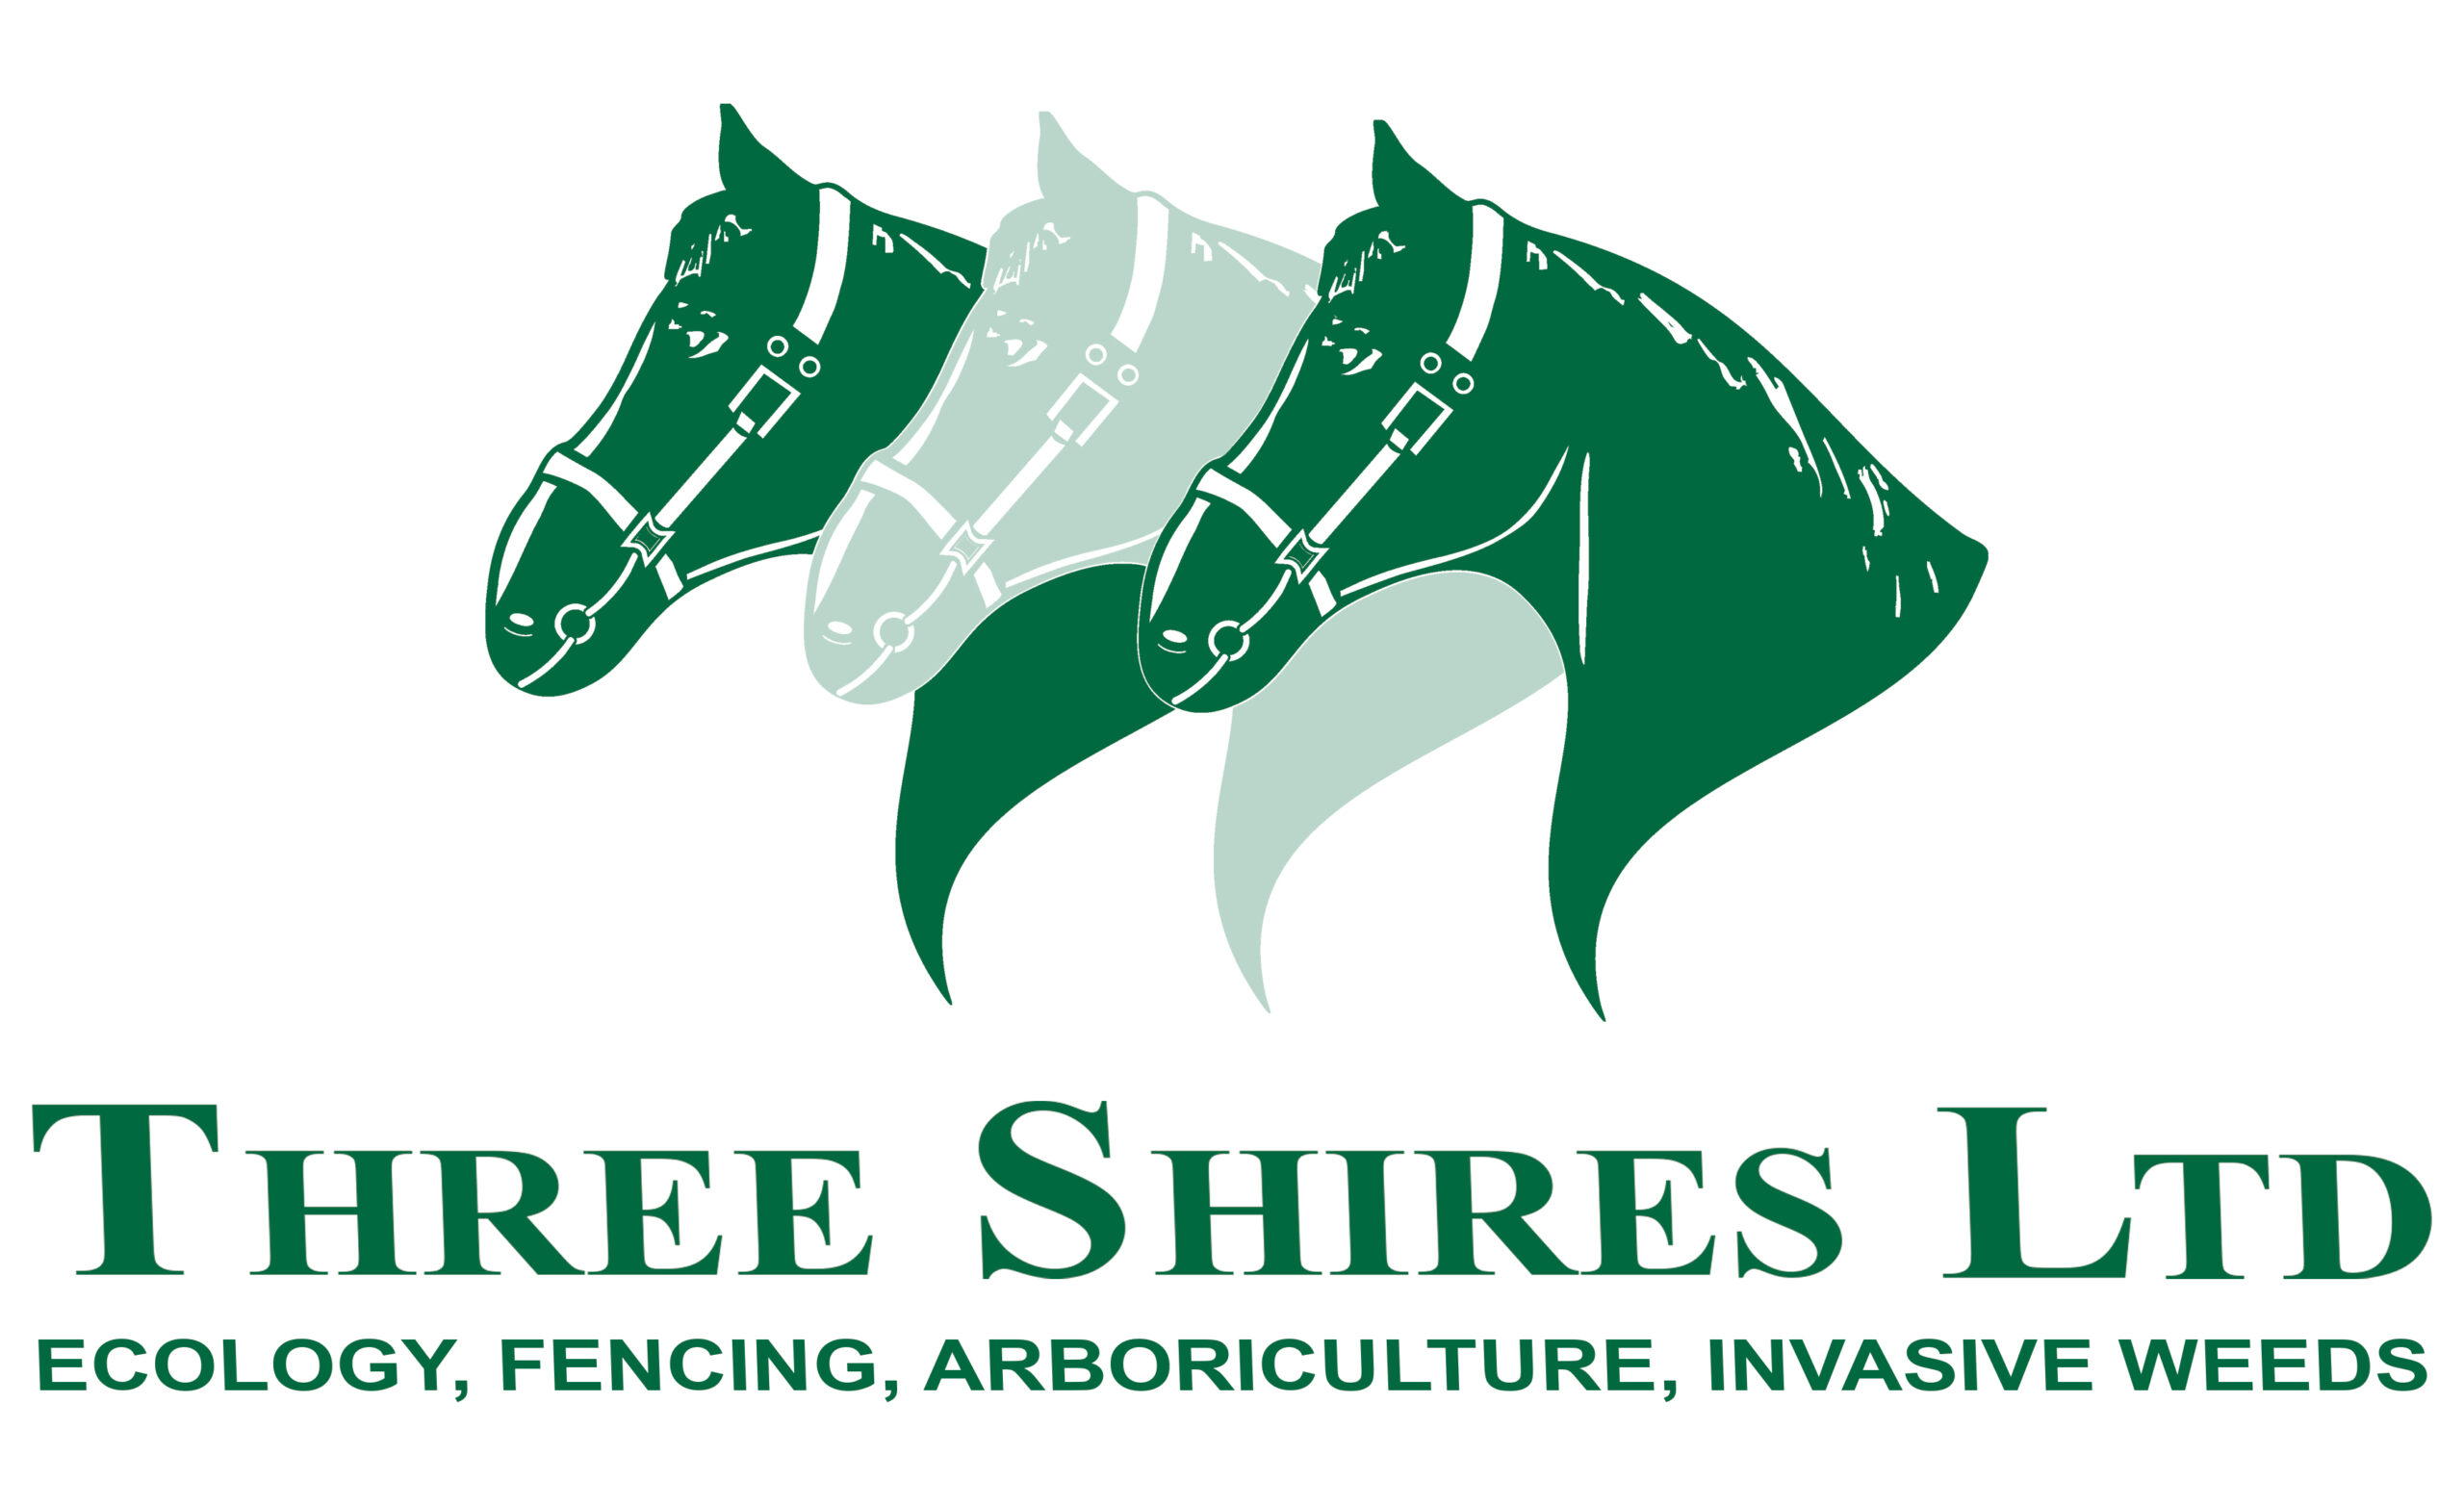 Three Shires Ltd